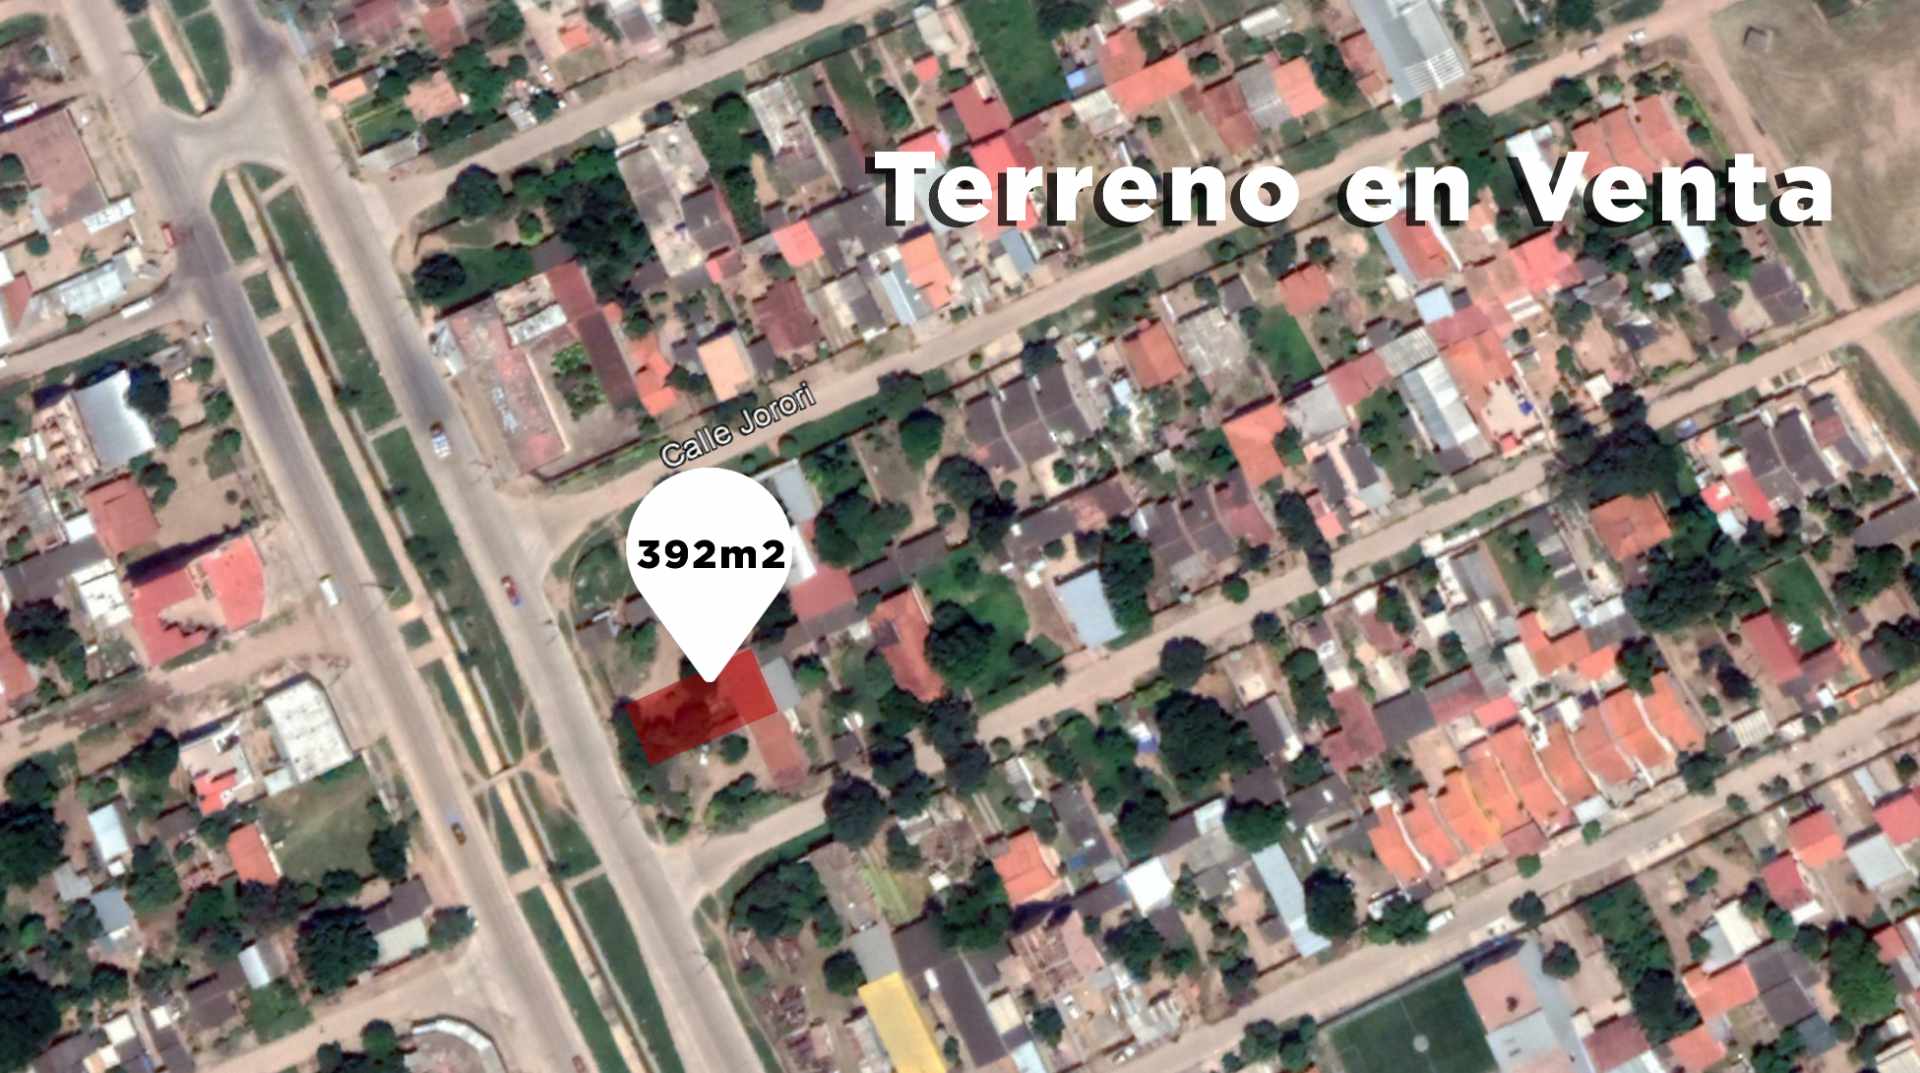 Terreno en VentaTerrenos en venta, Urb. El Dorado 2 Foto 3